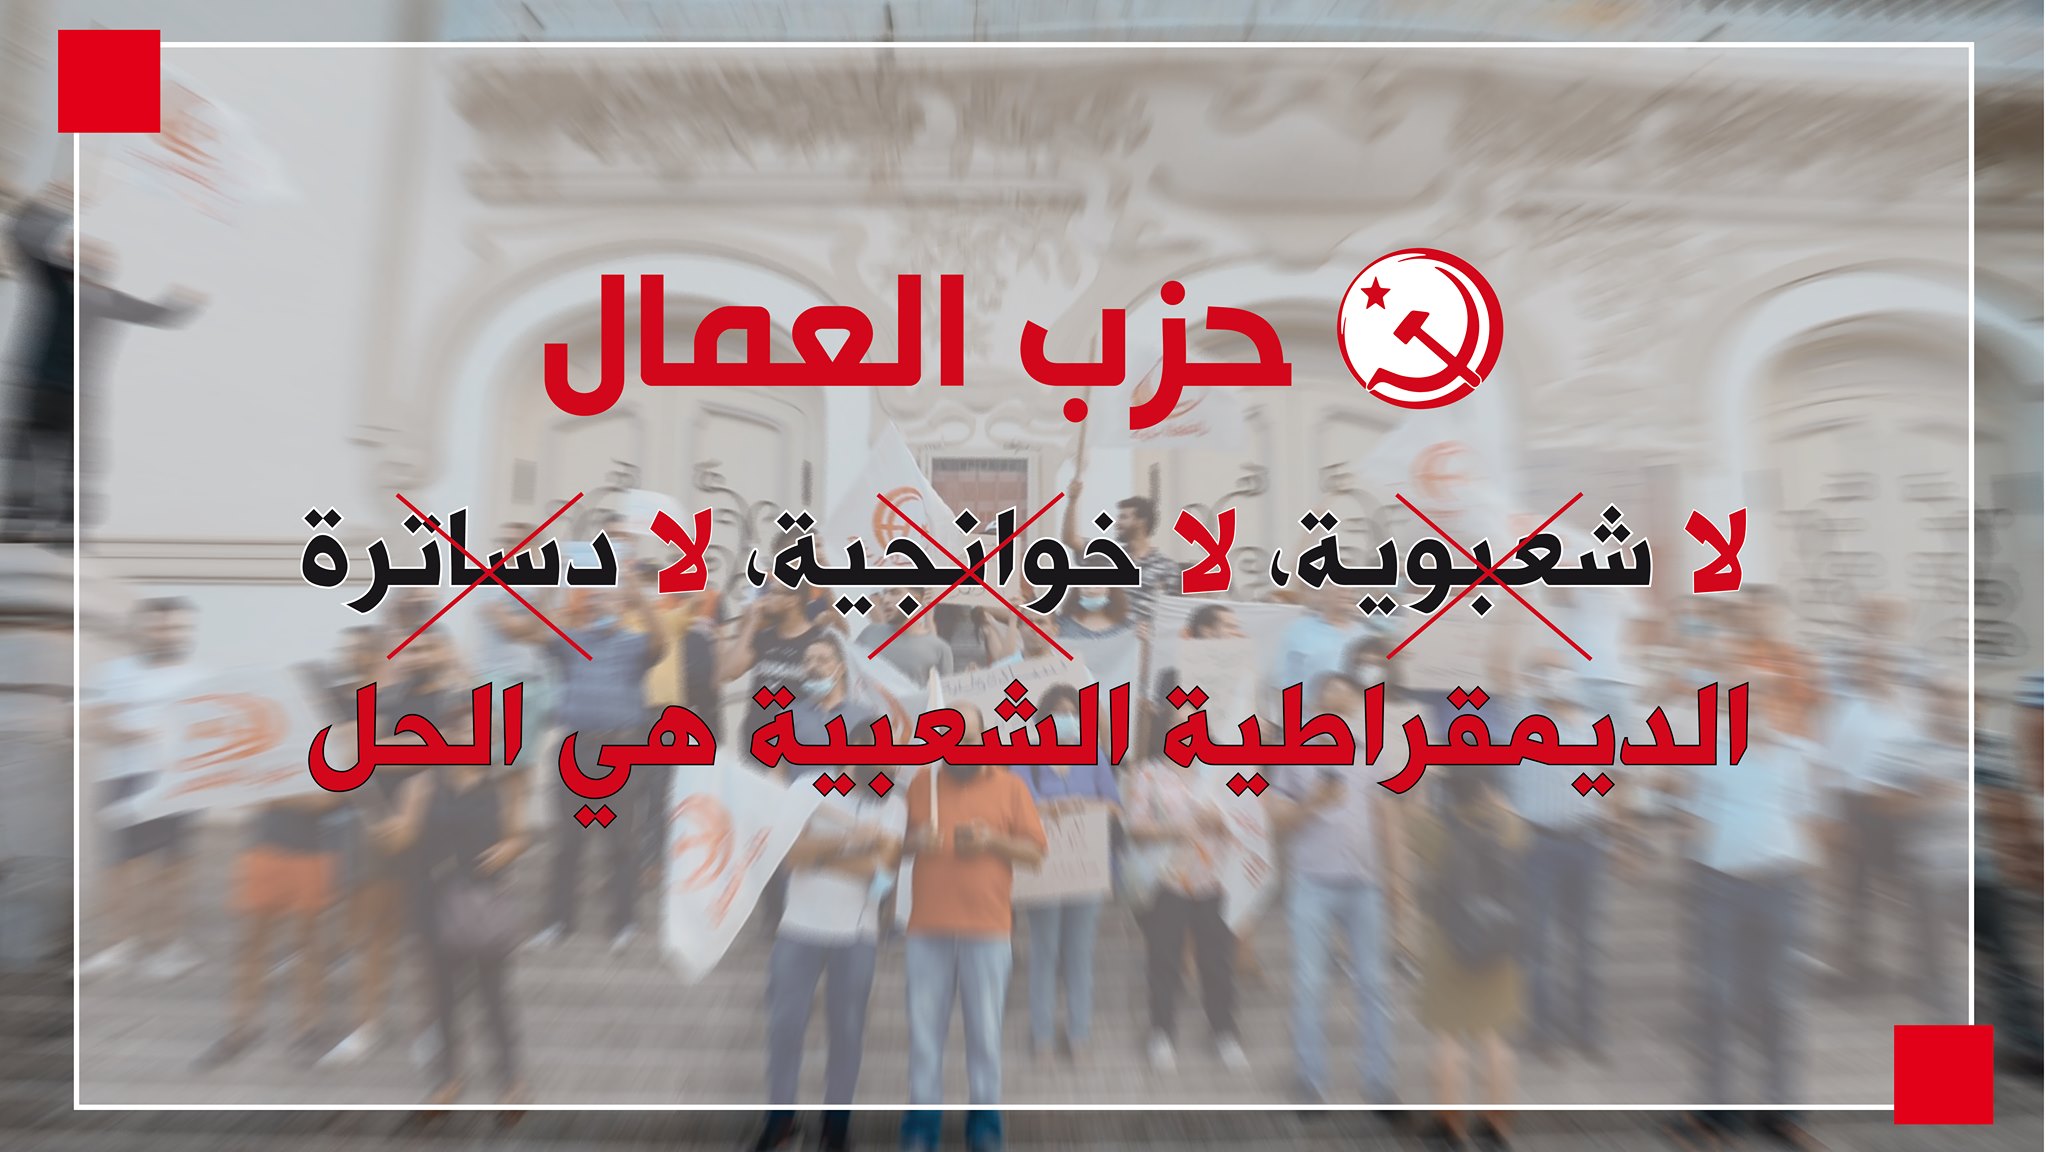 حزب العمال يعتبر حكومة بودن حكومة انقلاب بلا برنامج لتونس وشعبها